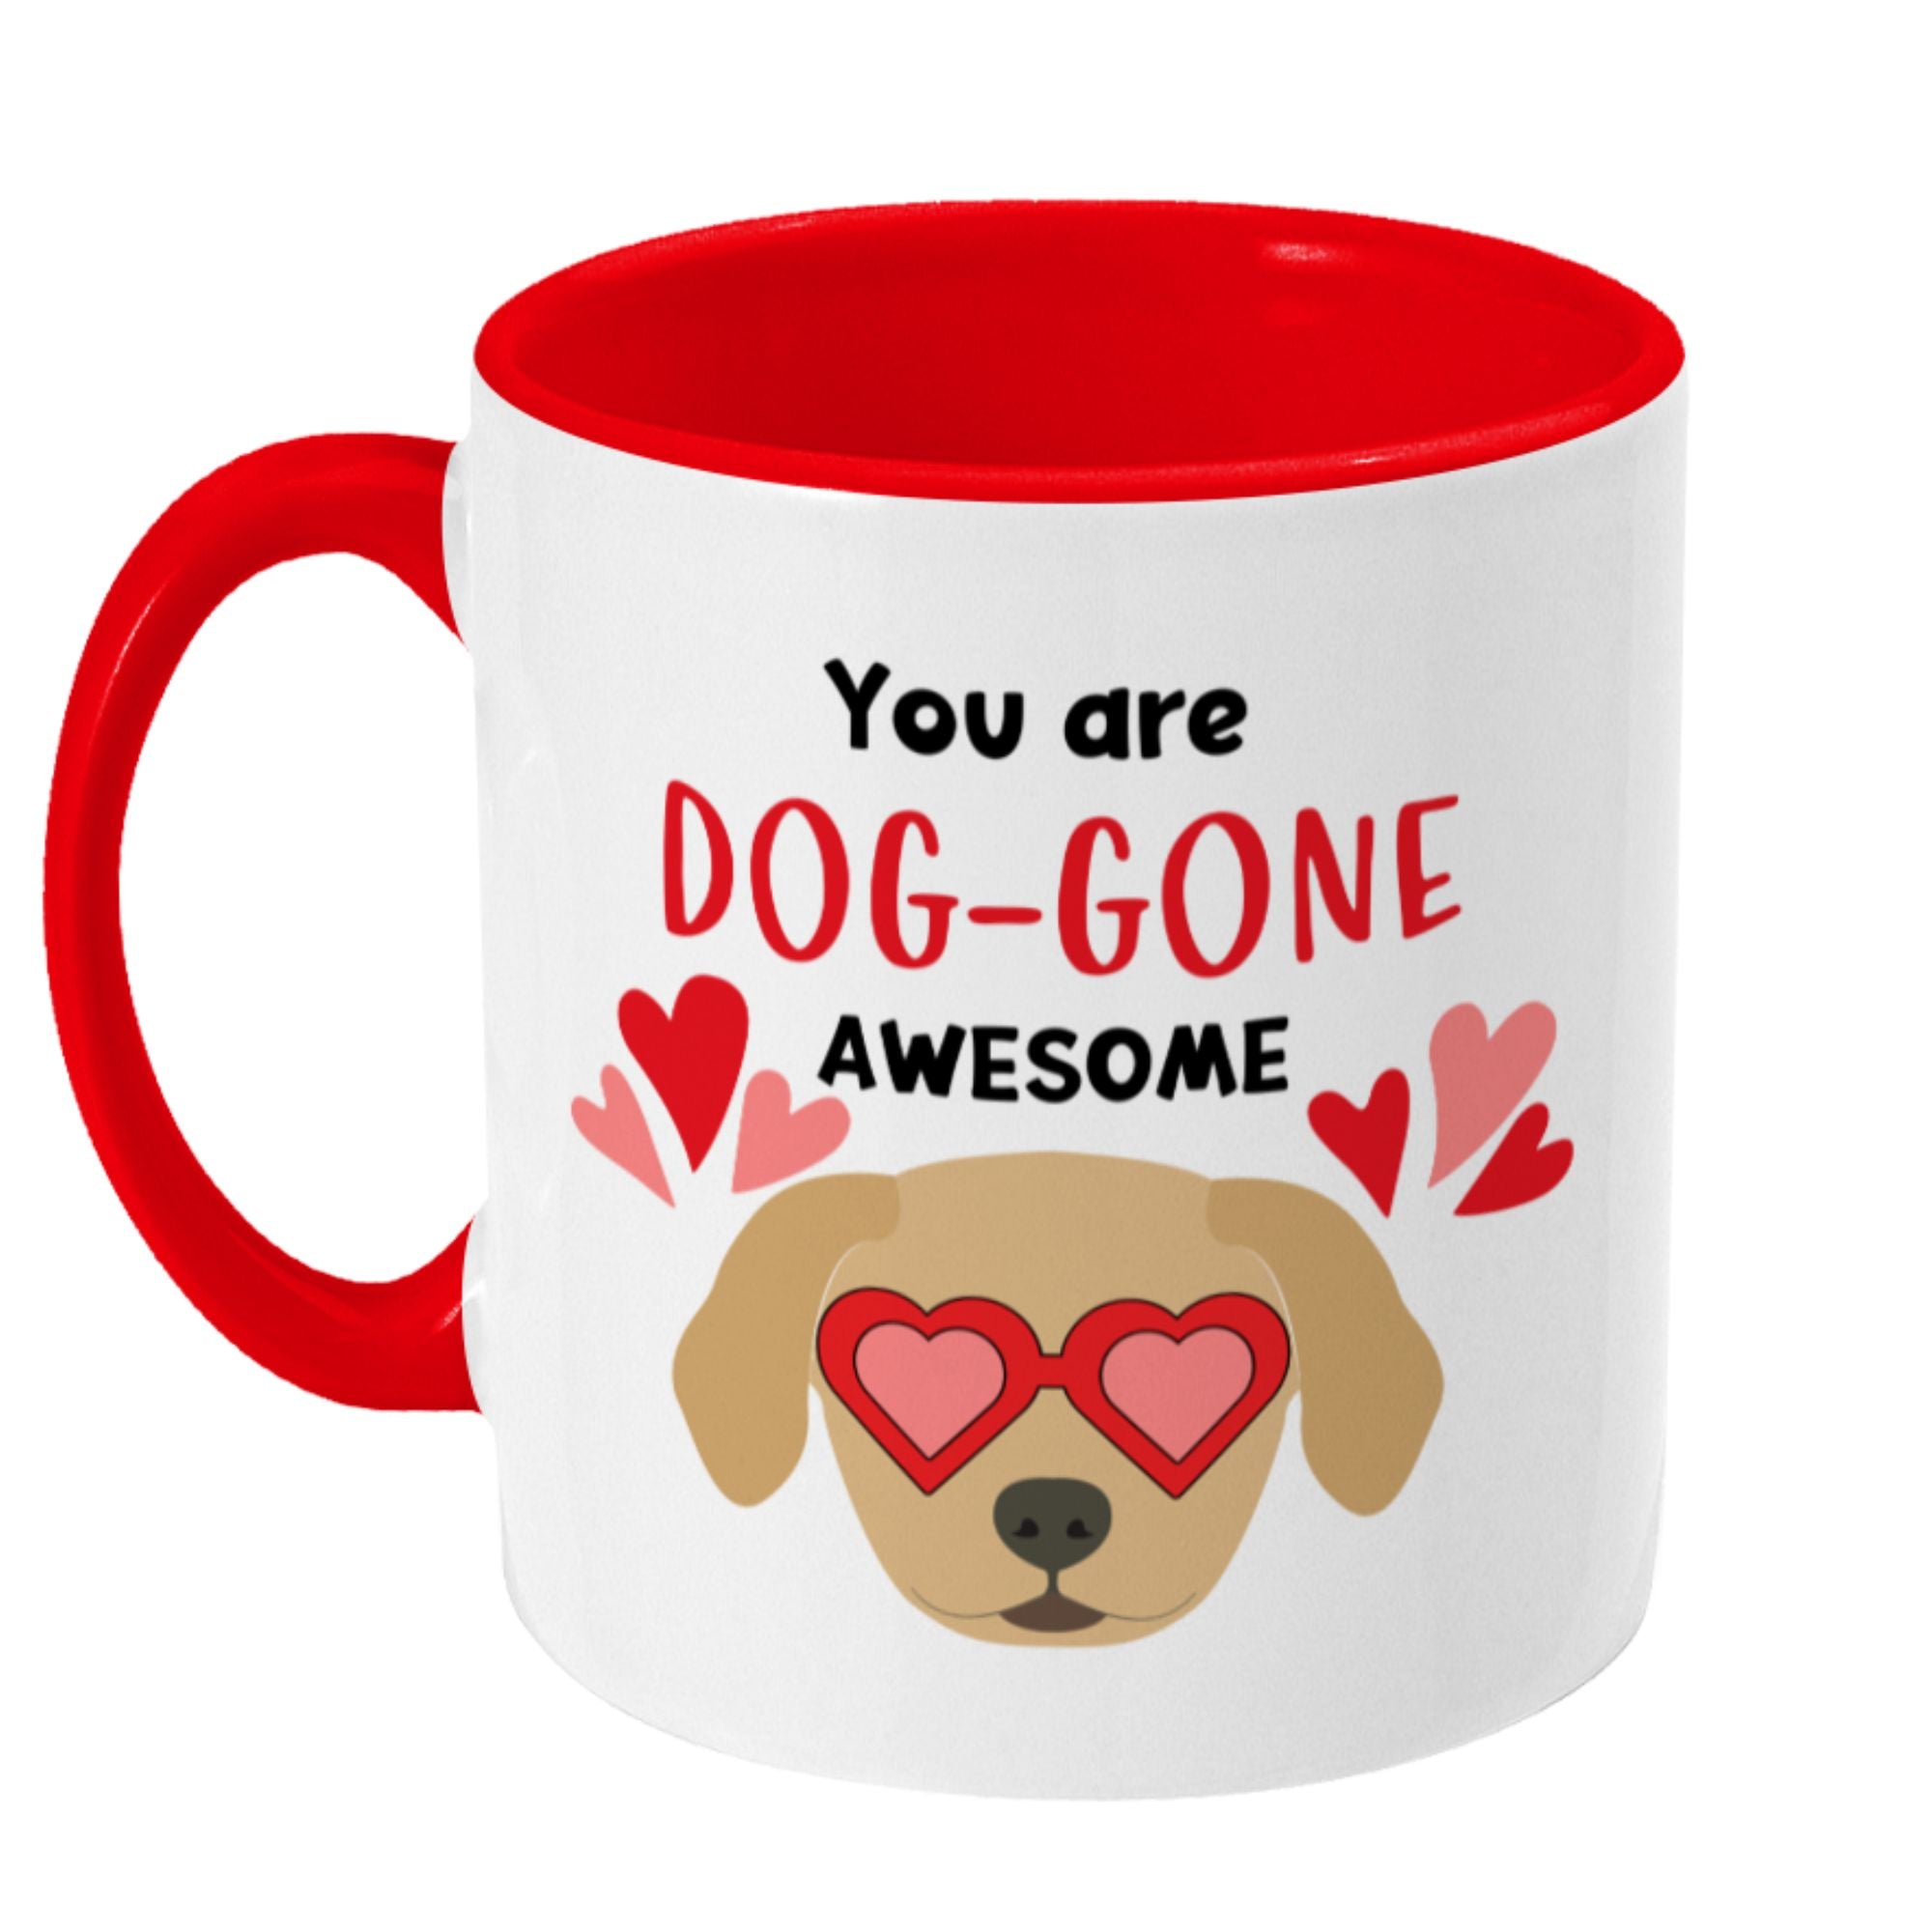 You are Dog-gone Awesome Mug, Ceramic Mug - Sweetie